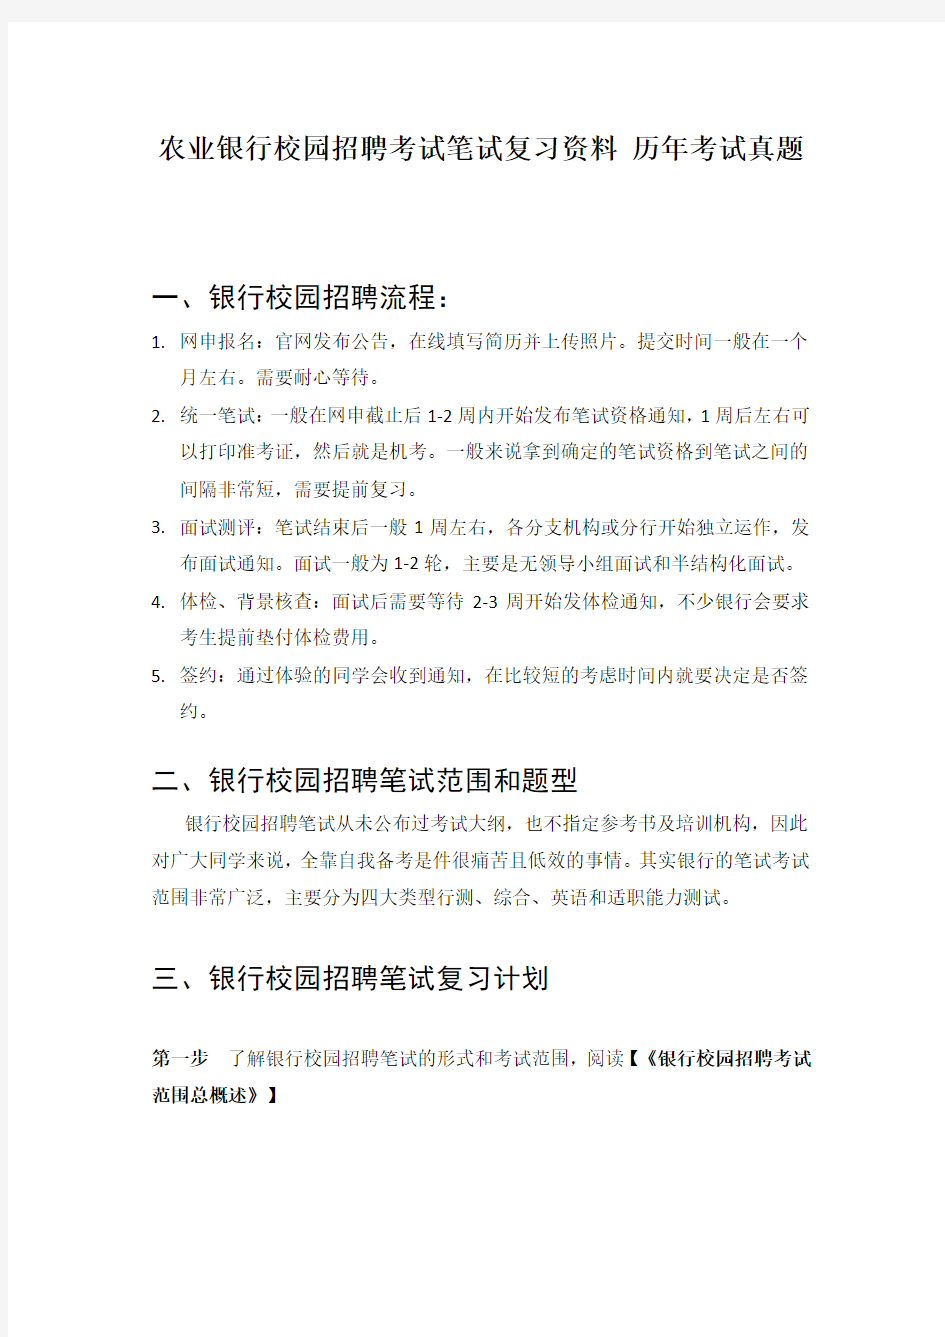 中国农业银行招聘考试笔试题目试卷  历年考试真题